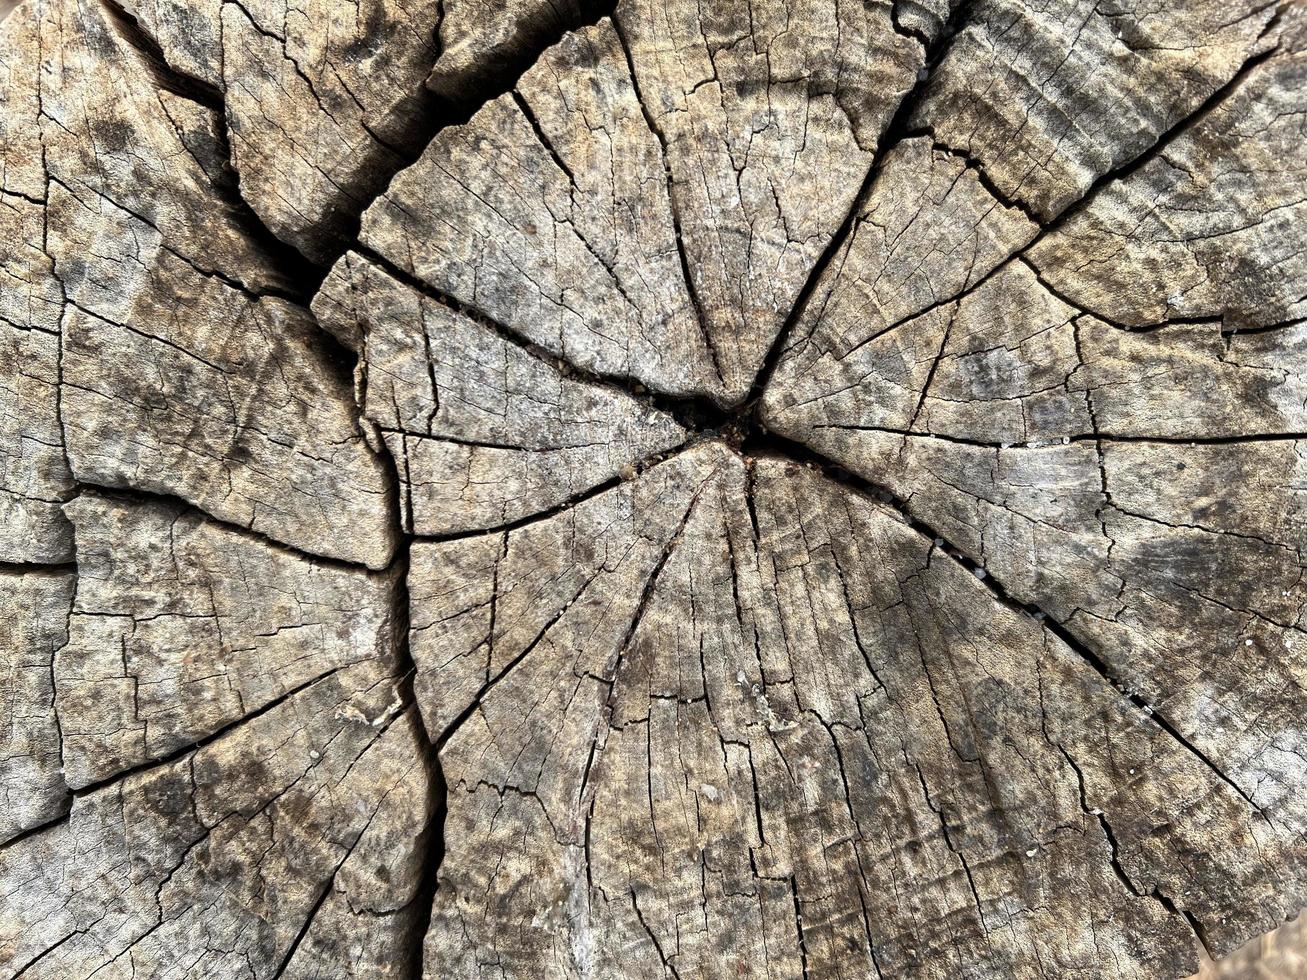 textura do árvore toco, natureza madeira para fundo. foto